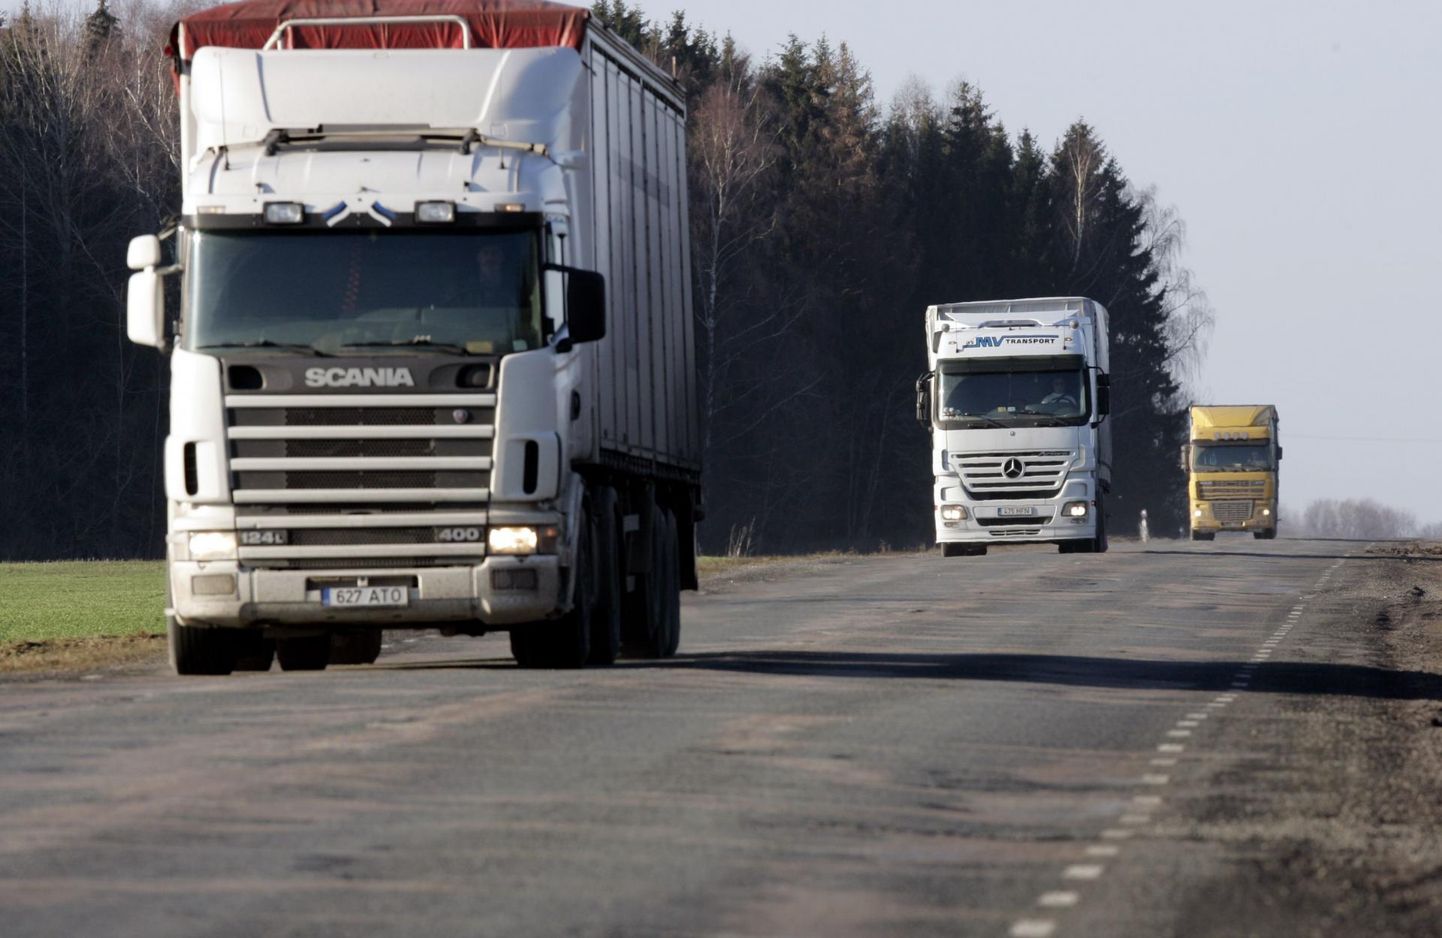 Eesti Rahvusvaheliste Autovedajate Assotsiatsioon pöördus valitsuse poole, et leida lahendusi transpordisektori keerulisele hetkeseisule. Foto on illustratiivne.